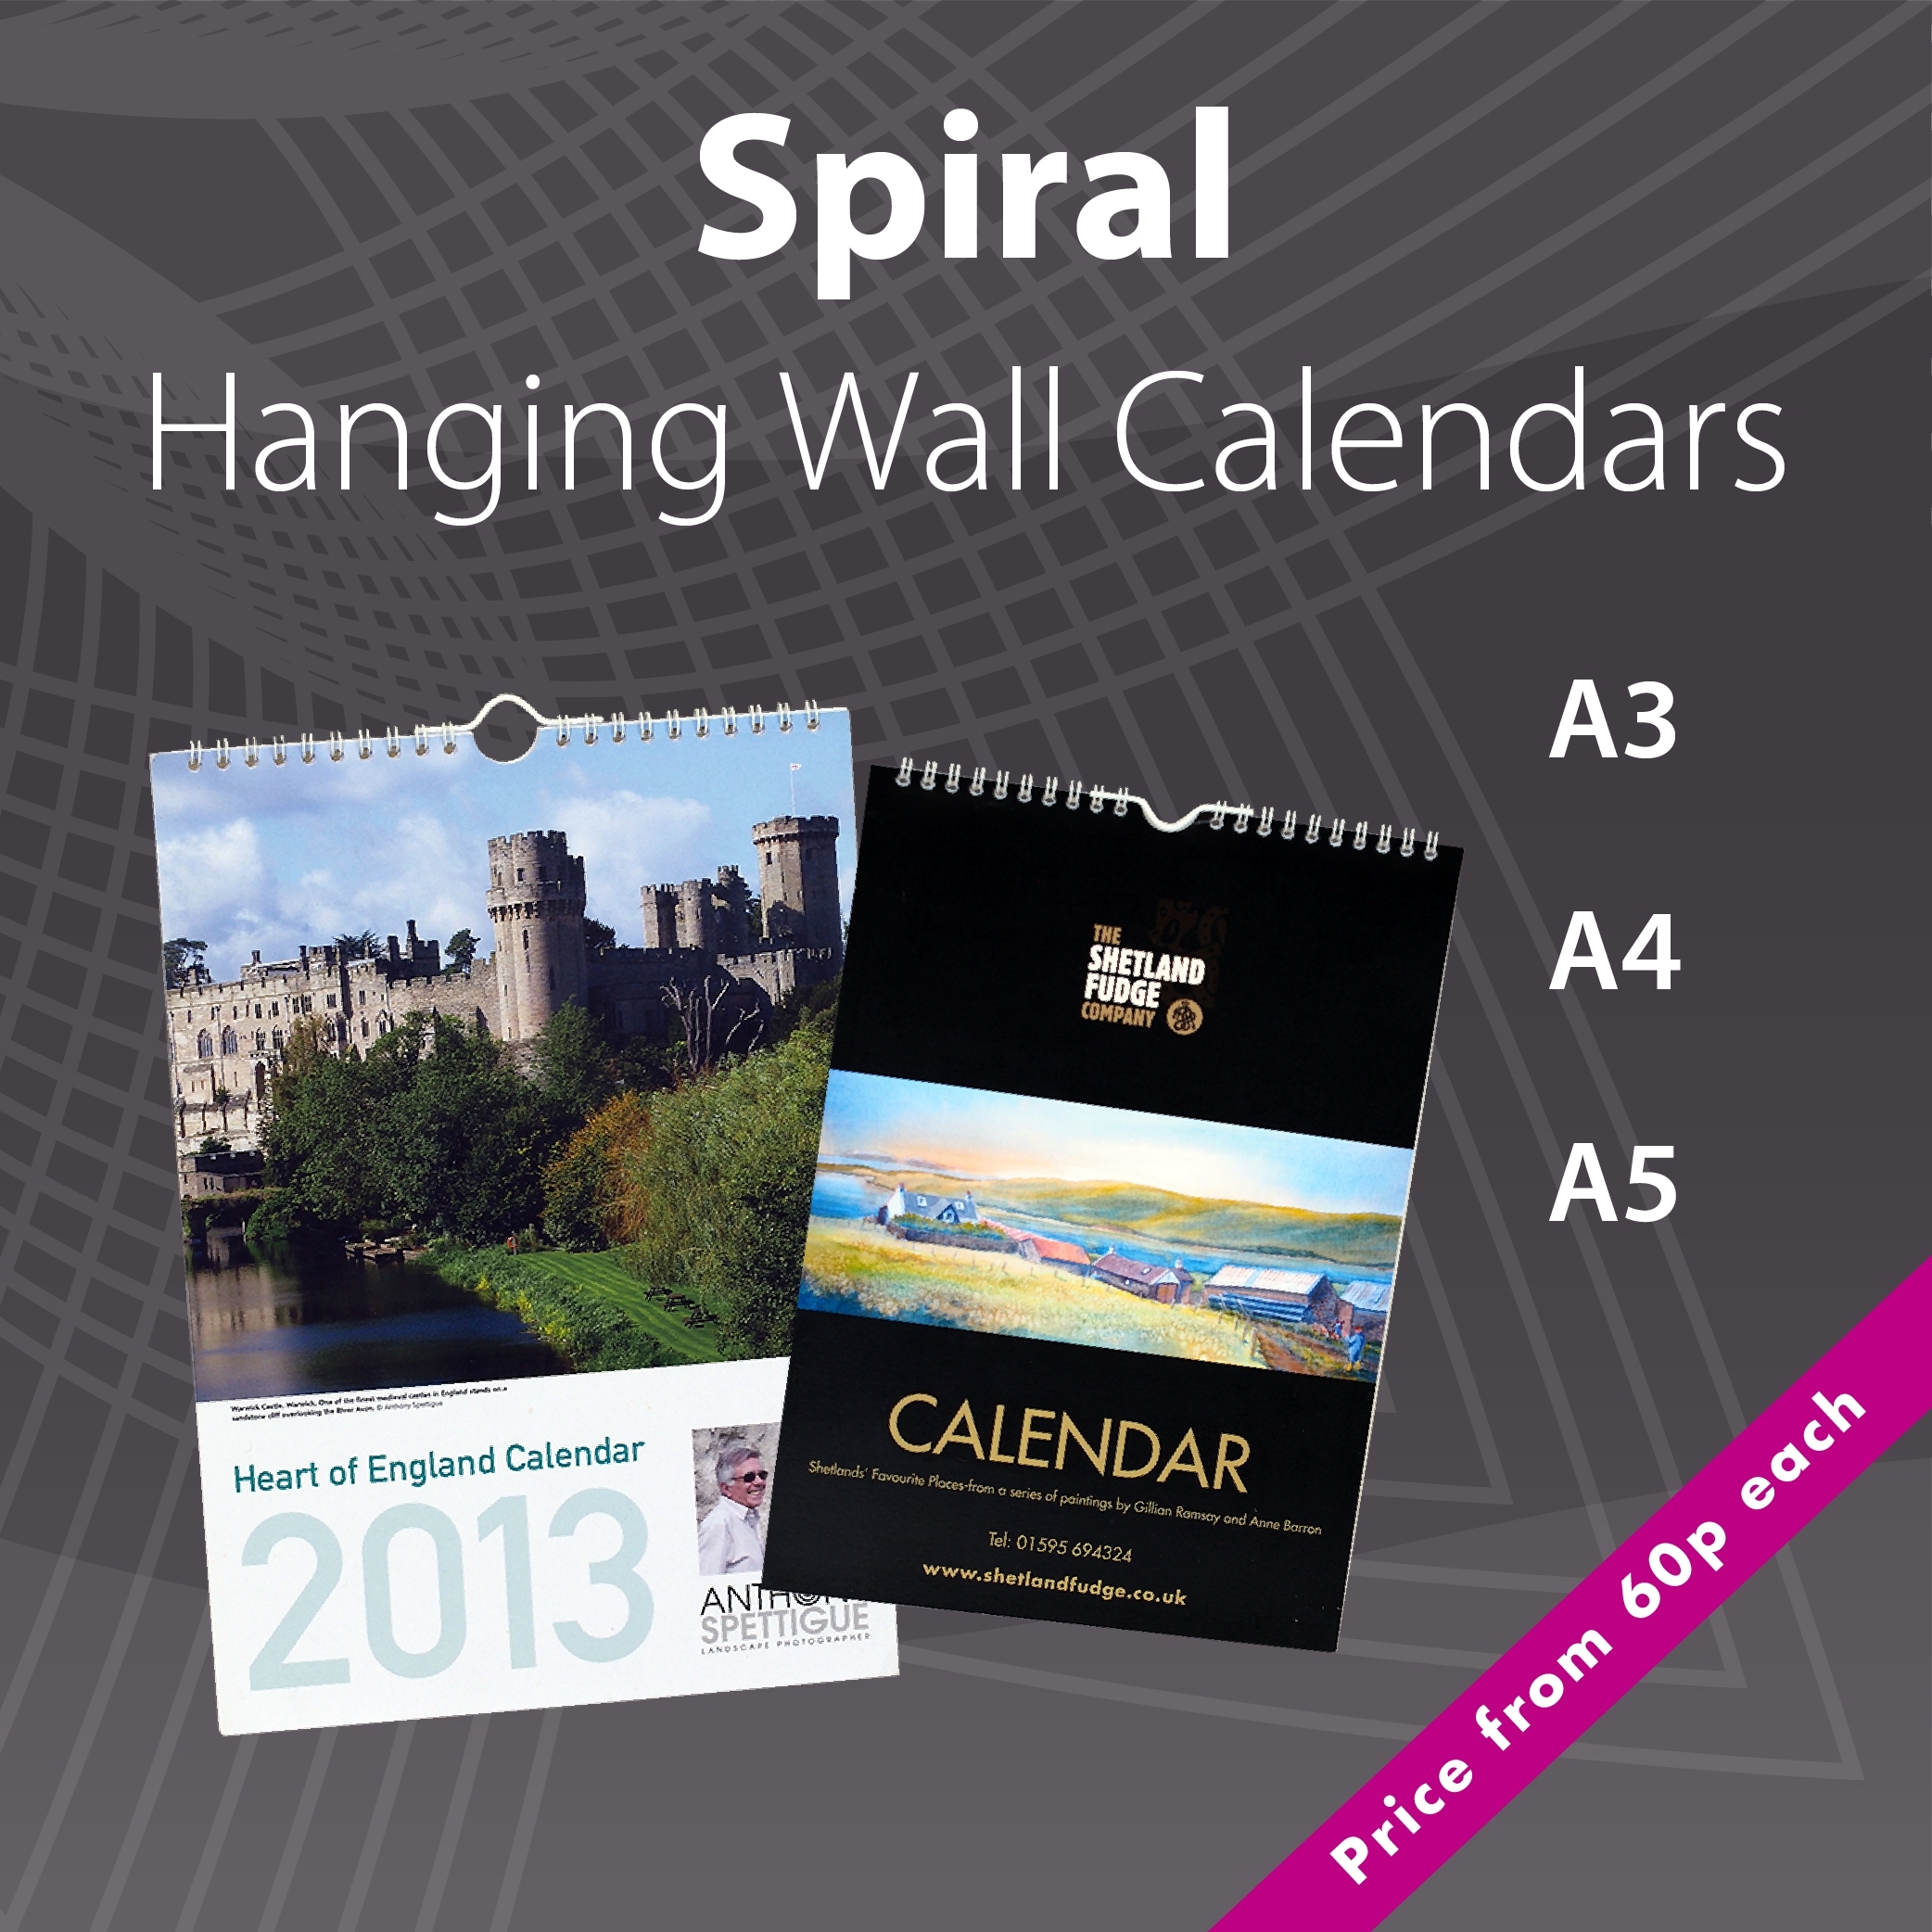 A4 Wall Calendar Printing • Printable Blank Calendar Template A3 Wall Calendar Printing